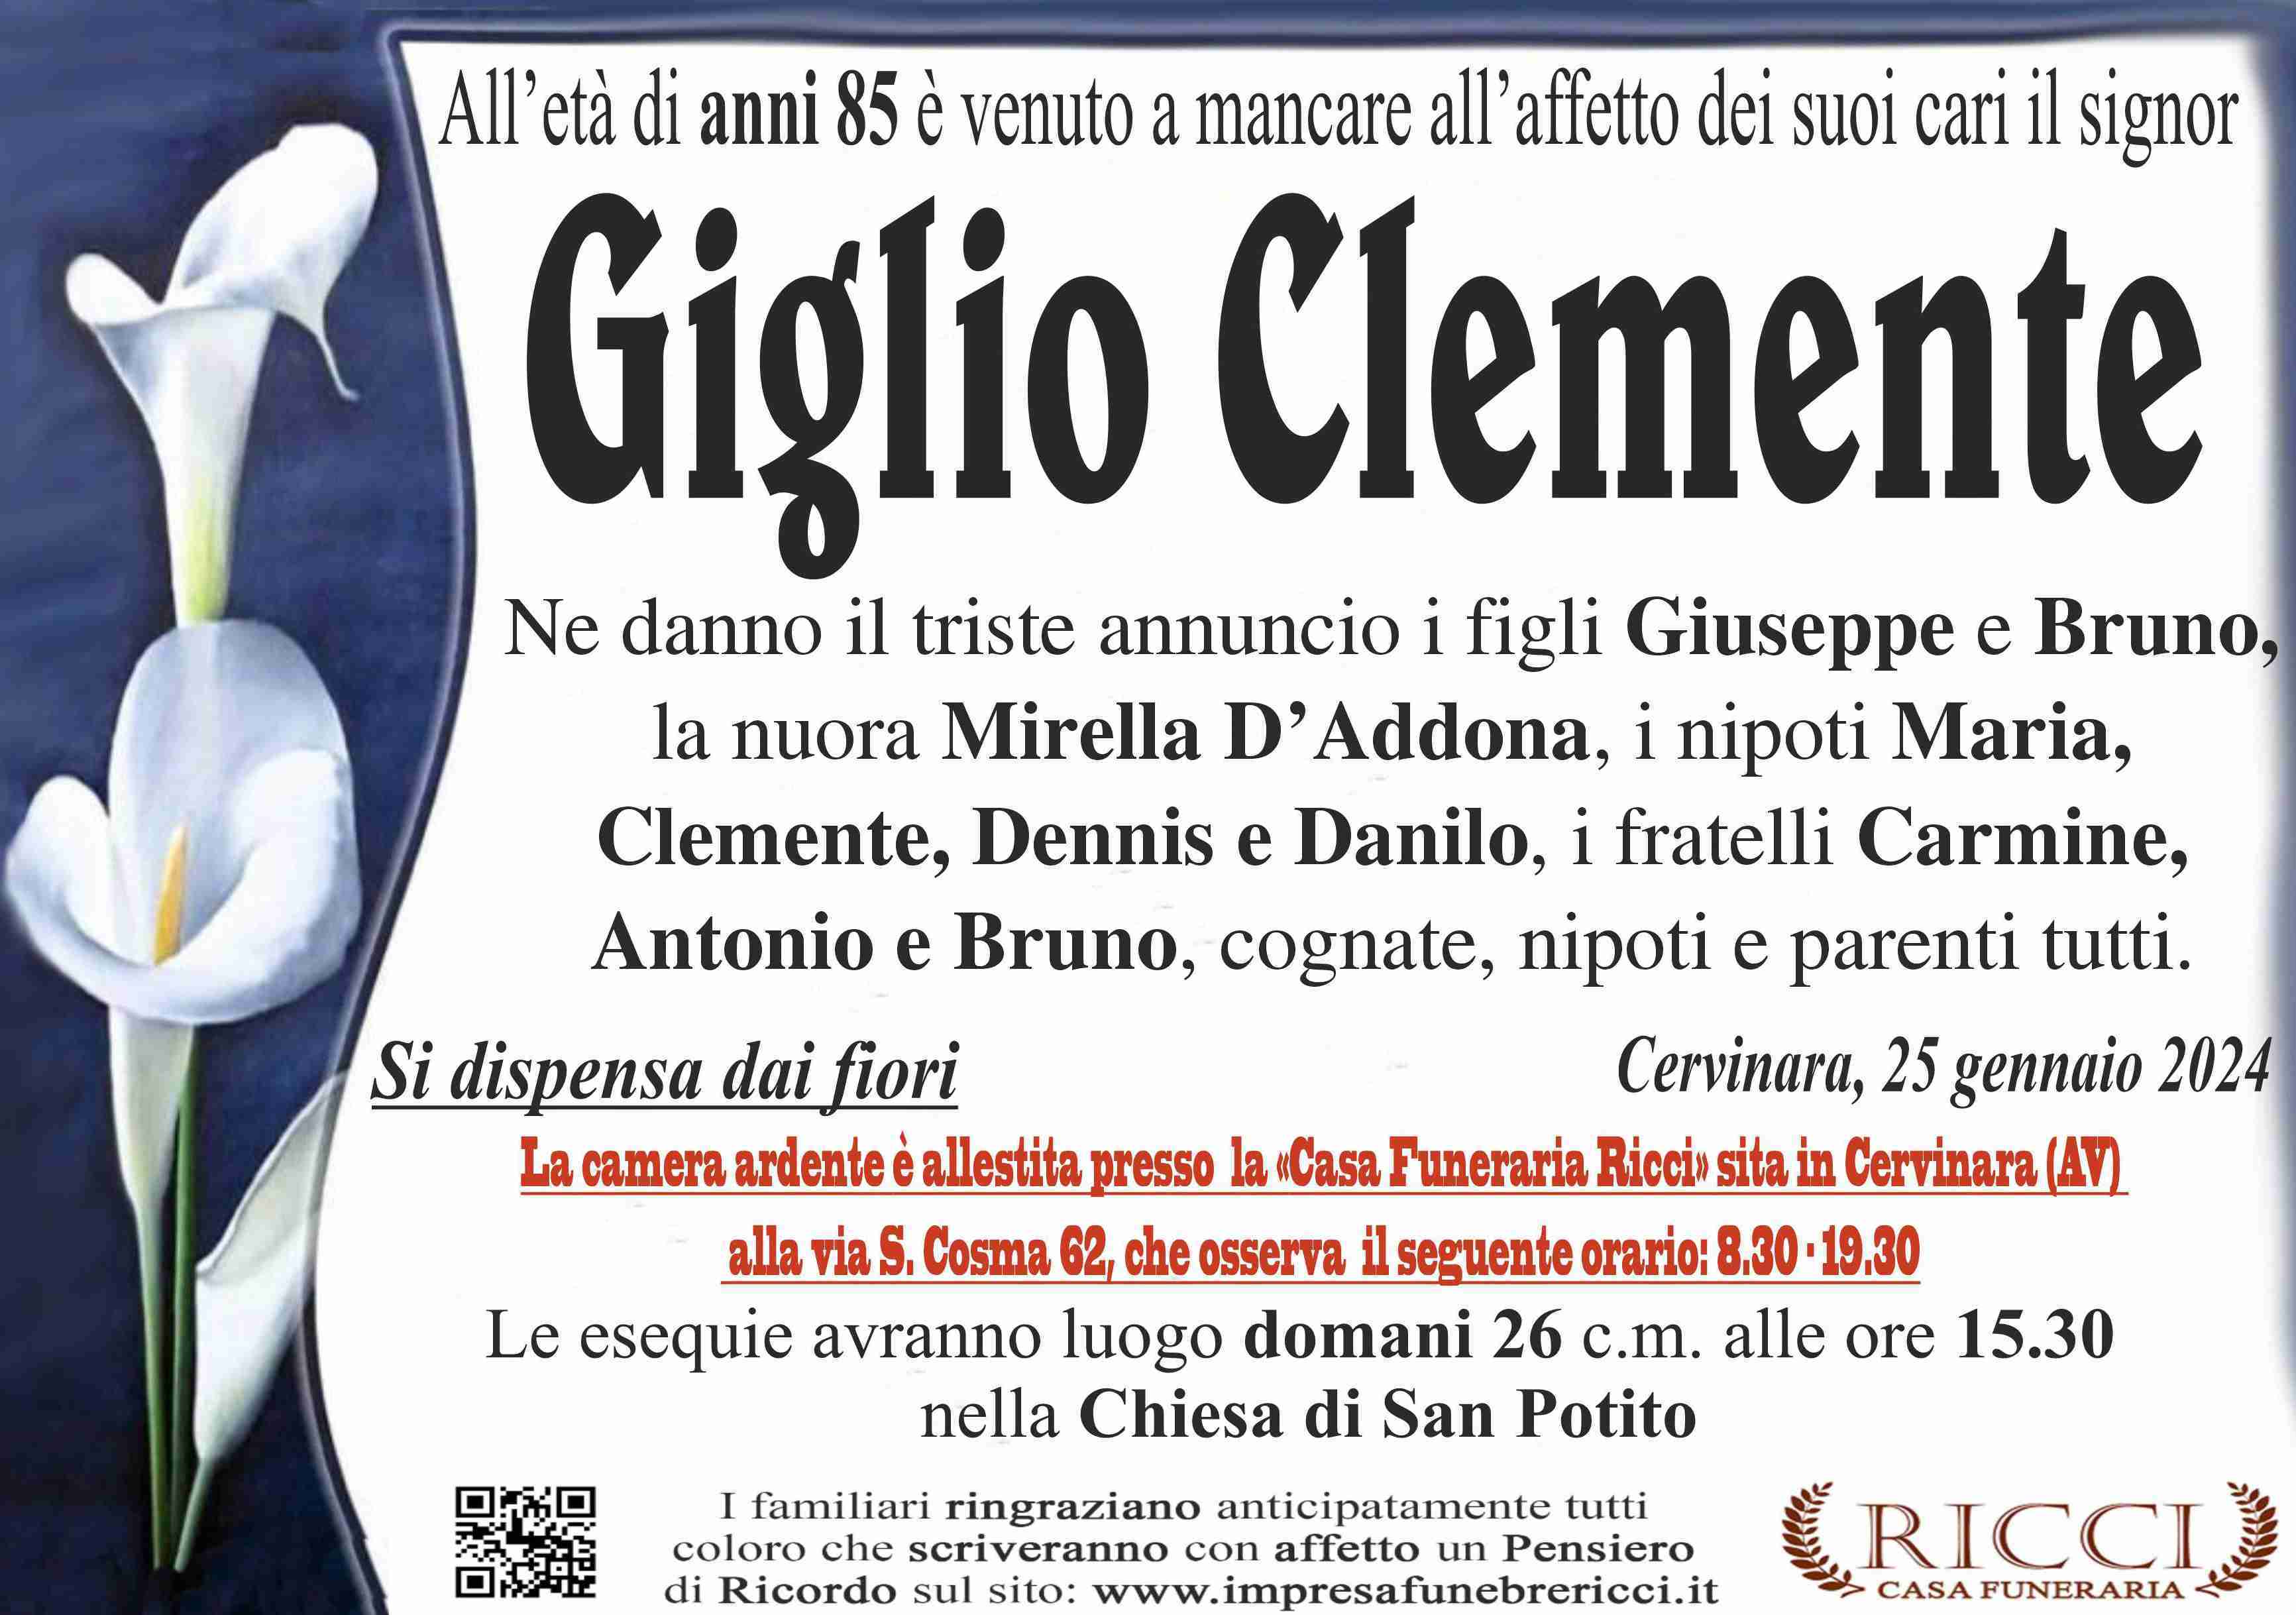 Clemente Giglio